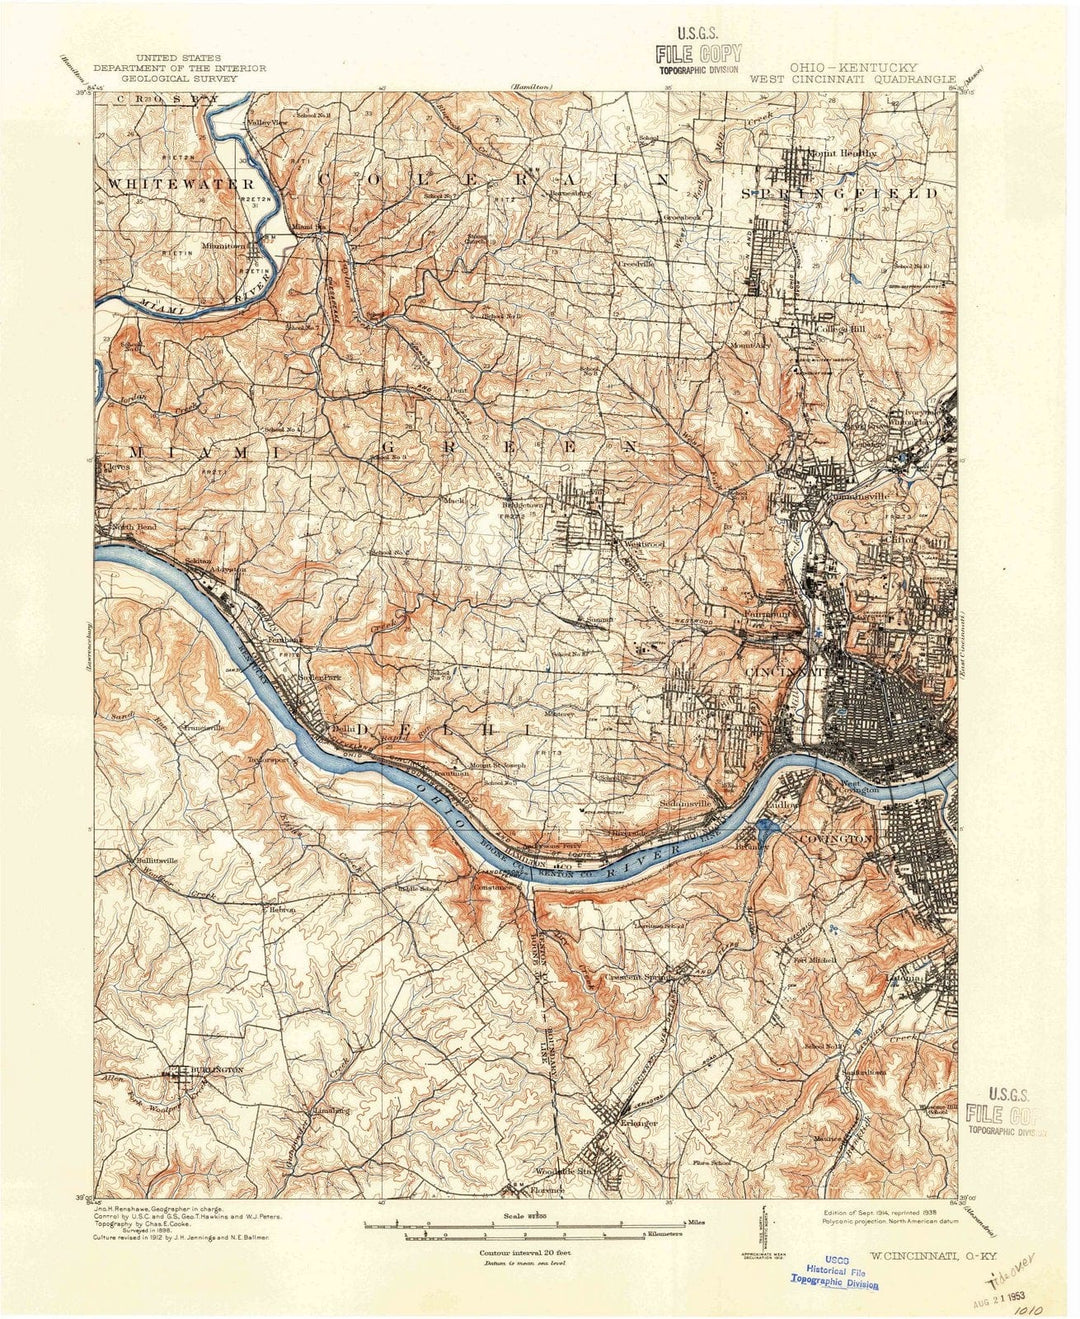 1914 West Cincinnati, OH - Ohio - USGS Topographic Map